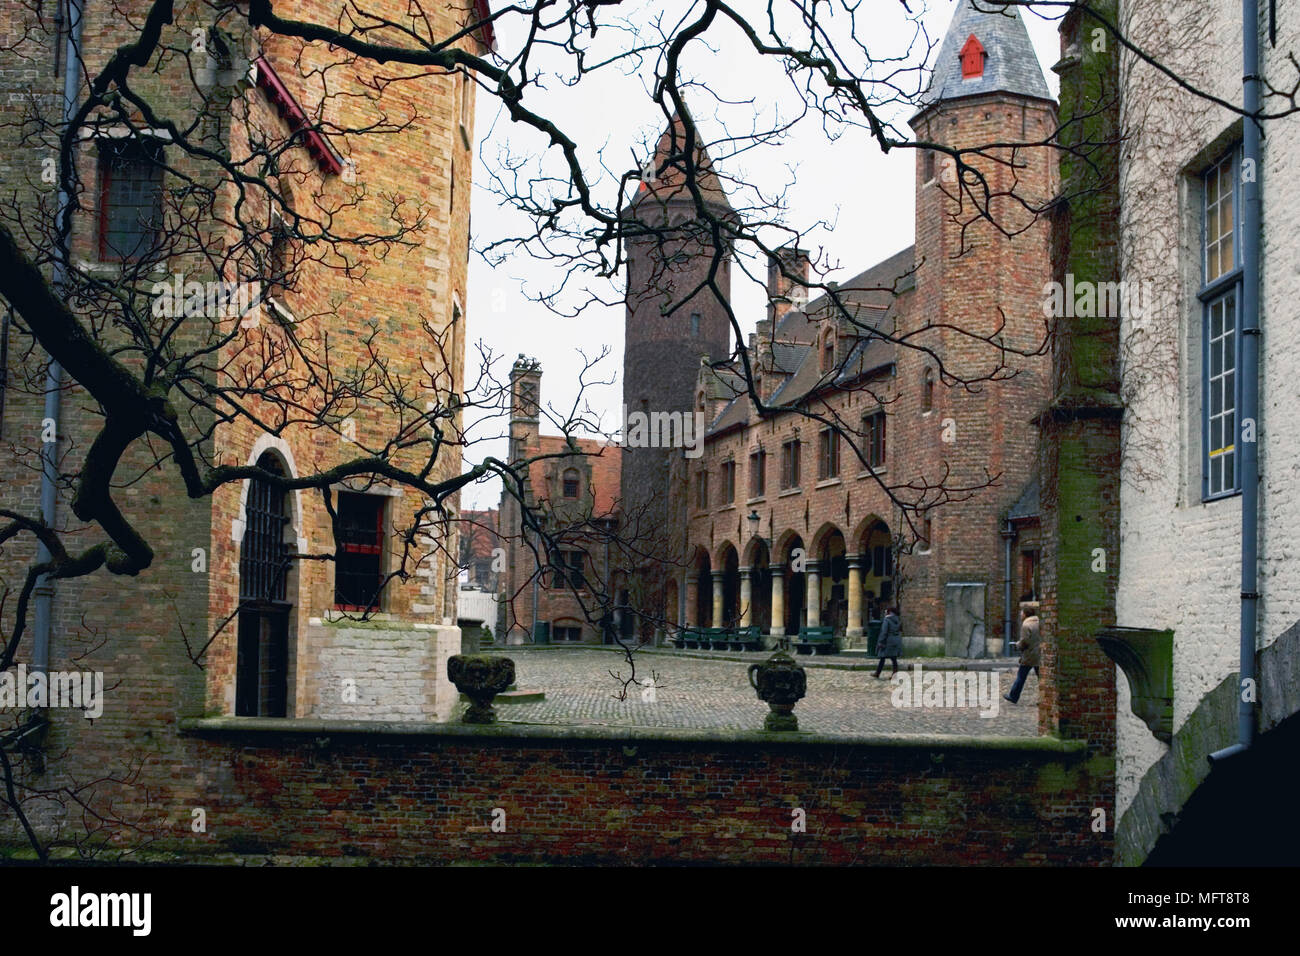 Le Palais de Gruuthuse, vu de Hof Arents (Arents Park), Brugge, Belgique Banque D'Images